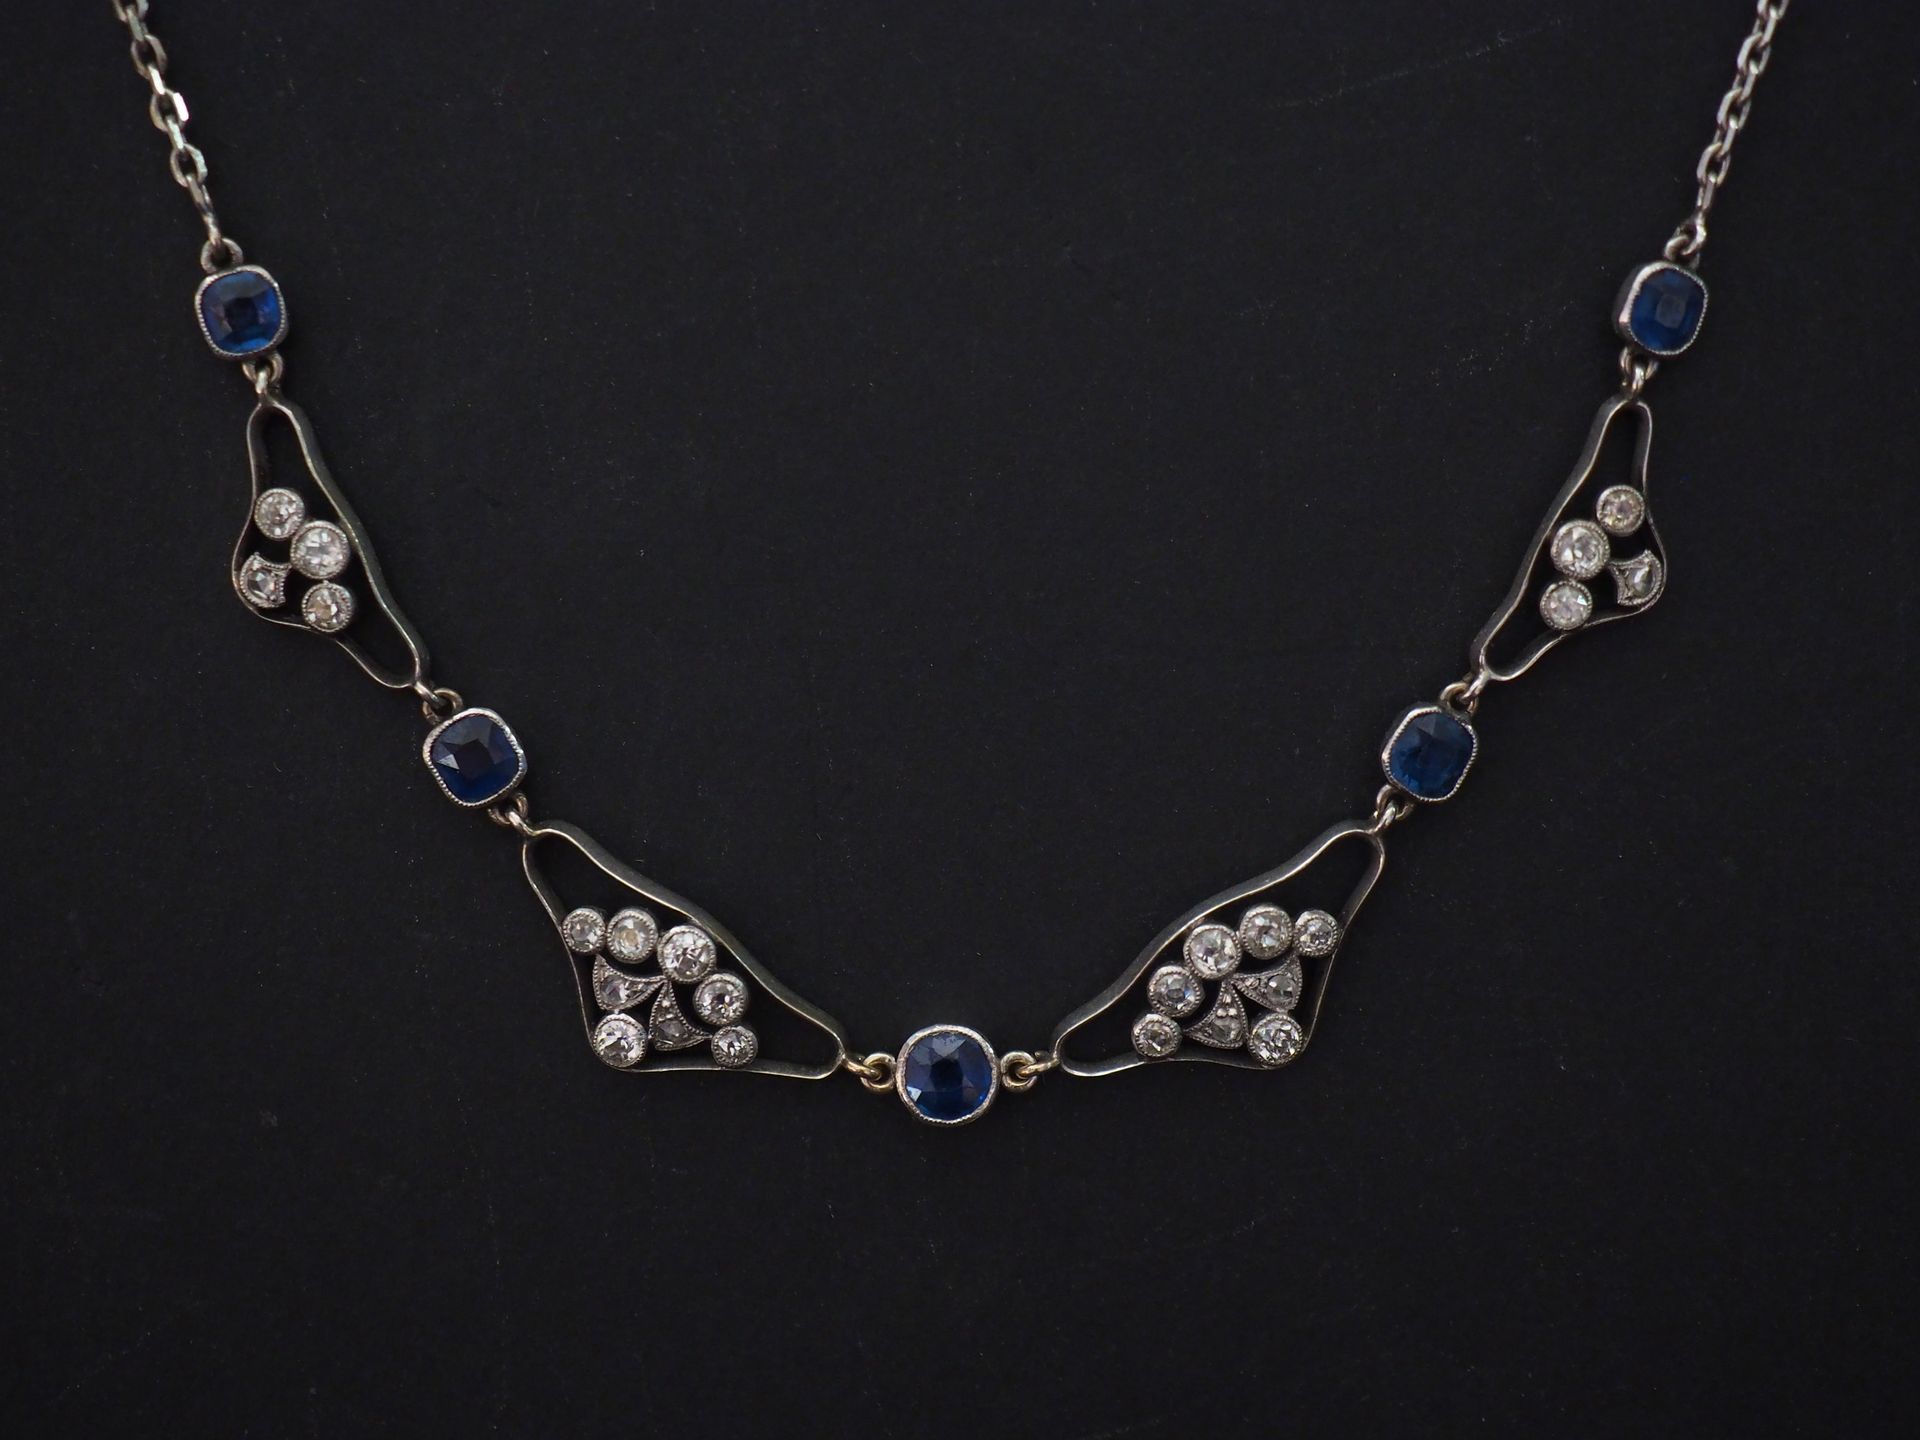 Null 白金项链，装饰有蓝宝石，与镶嵌有小型玫瑰切割钻石的镂空链节交替。

长39厘米

重量约为9.39克